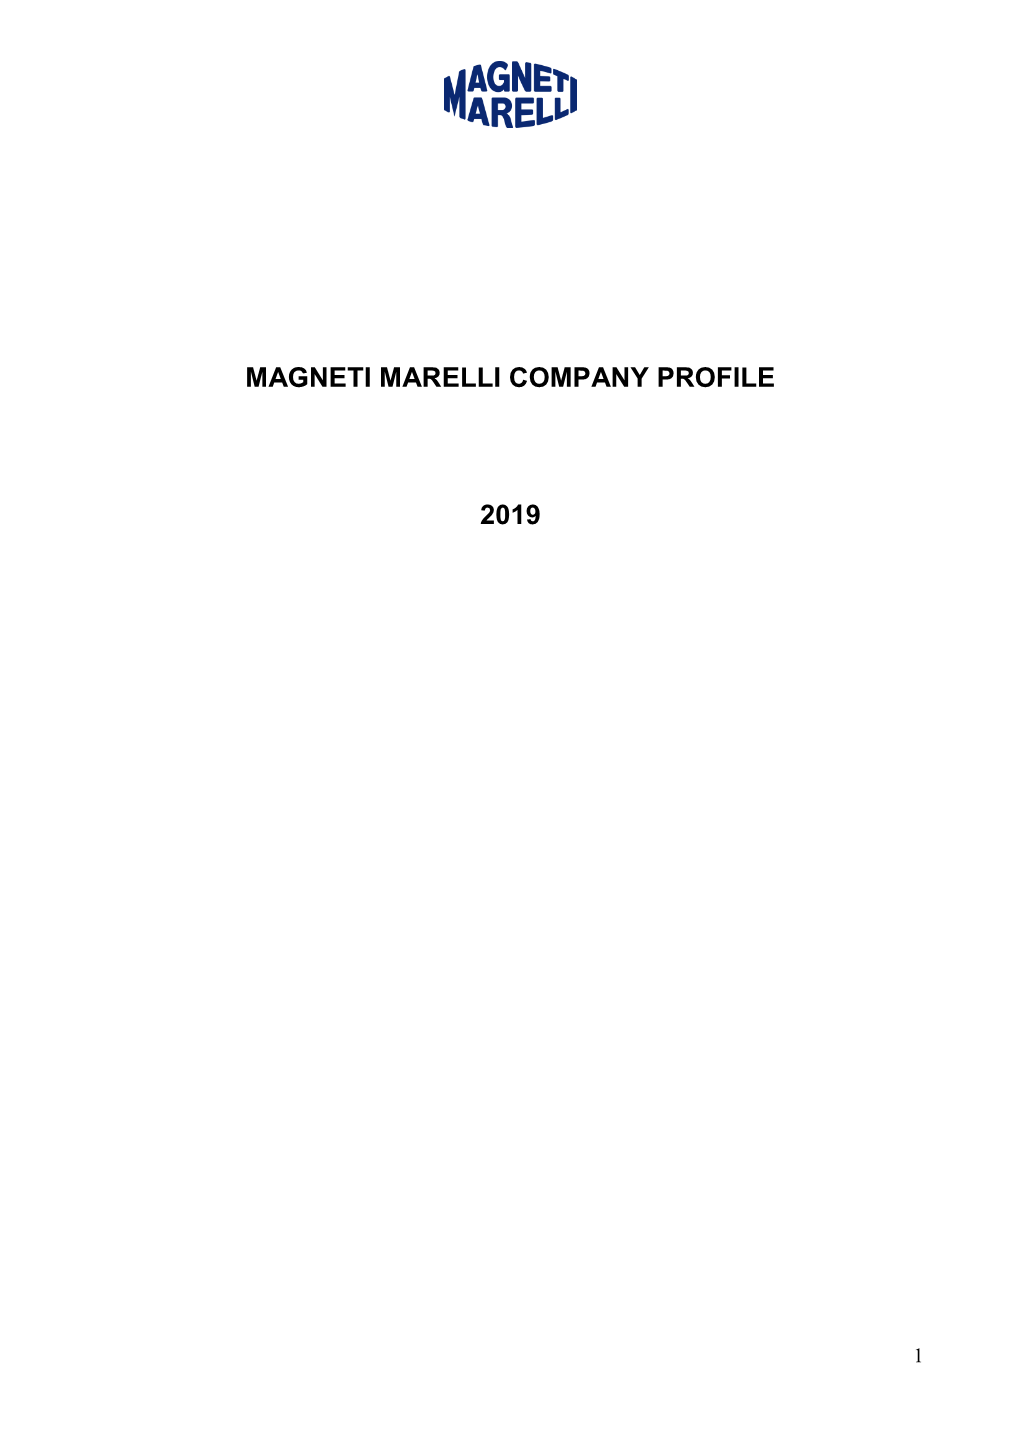 Magneti Marelli Company Profile 2019